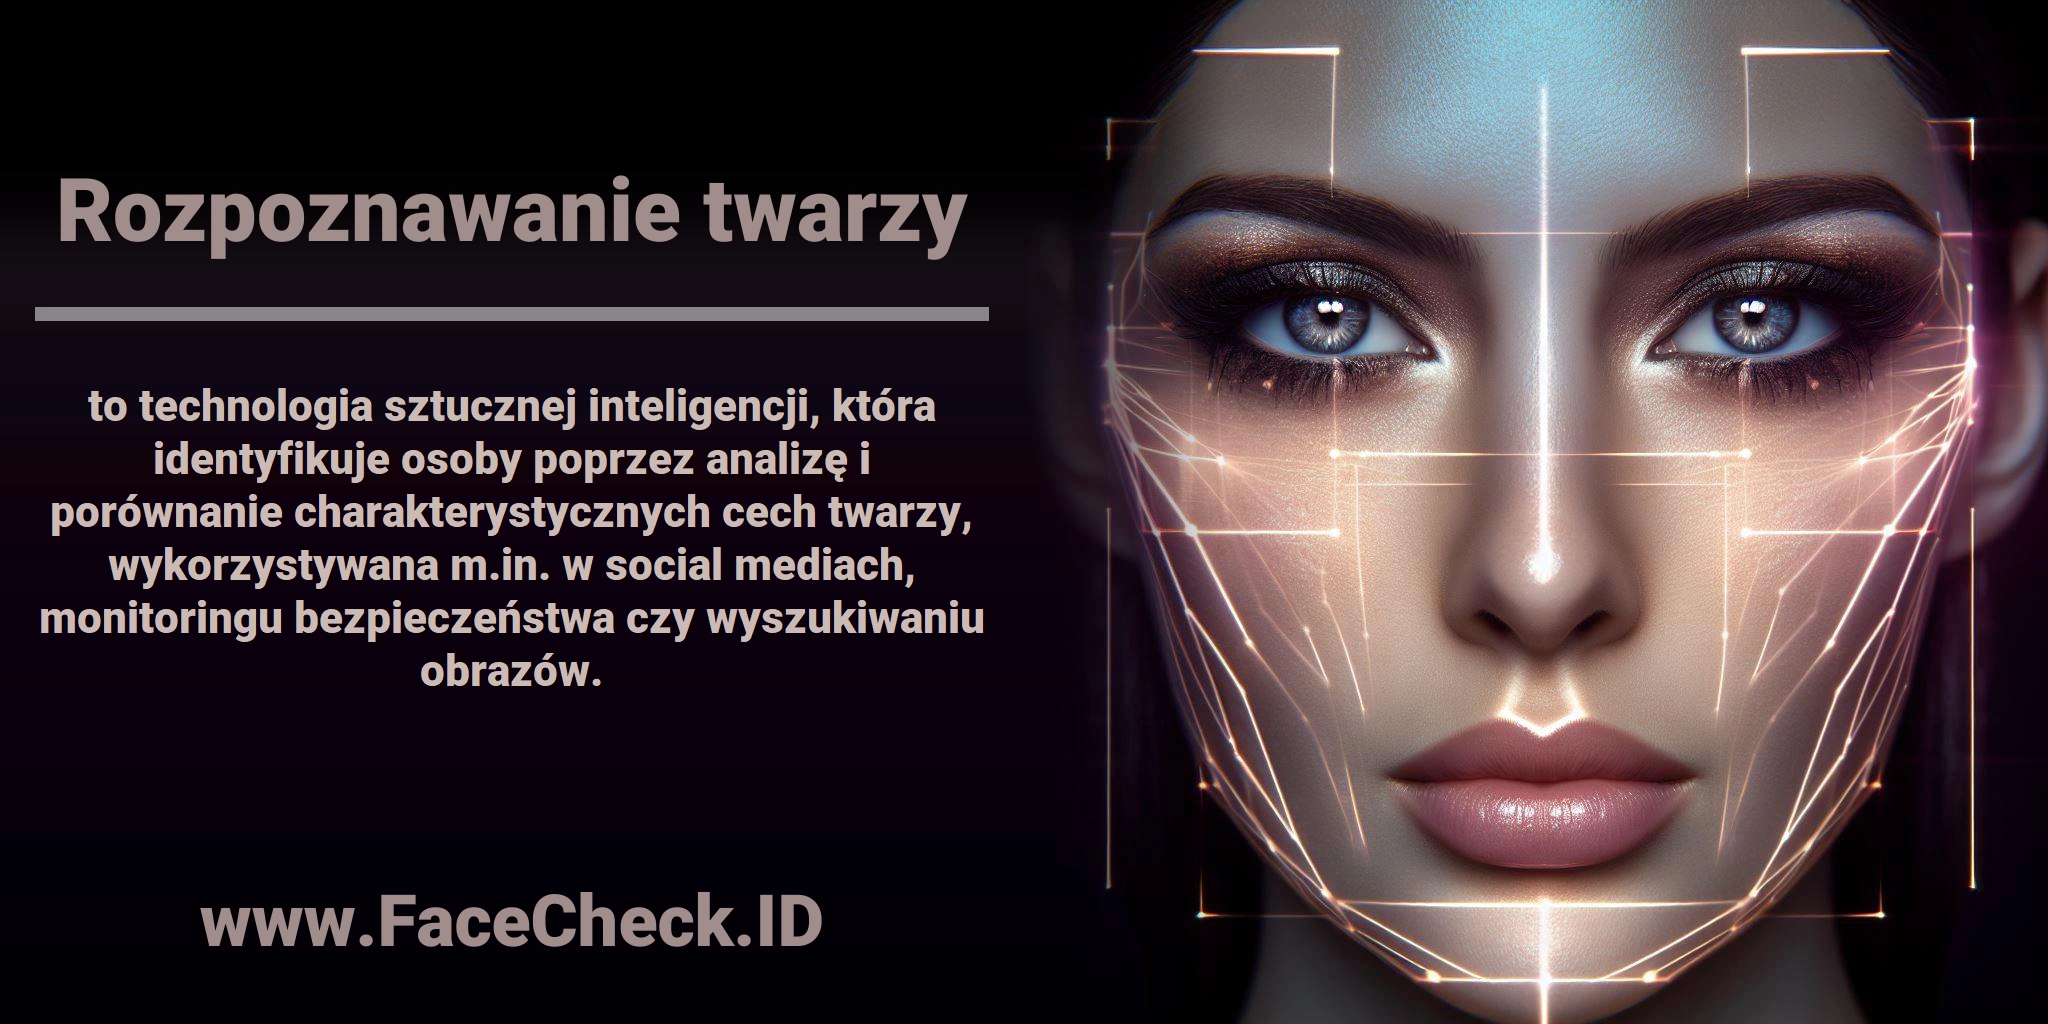 <b>Rozpoznawanie twarzy</b> to technologia sztucznej inteligencji, która identyfikuje osoby poprzez analizę i porównanie charakterystycznych cech twarzy, wykorzystywana m.in. w social mediach, monitoringu bezpieczeństwa czy wyszukiwaniu obrazów.